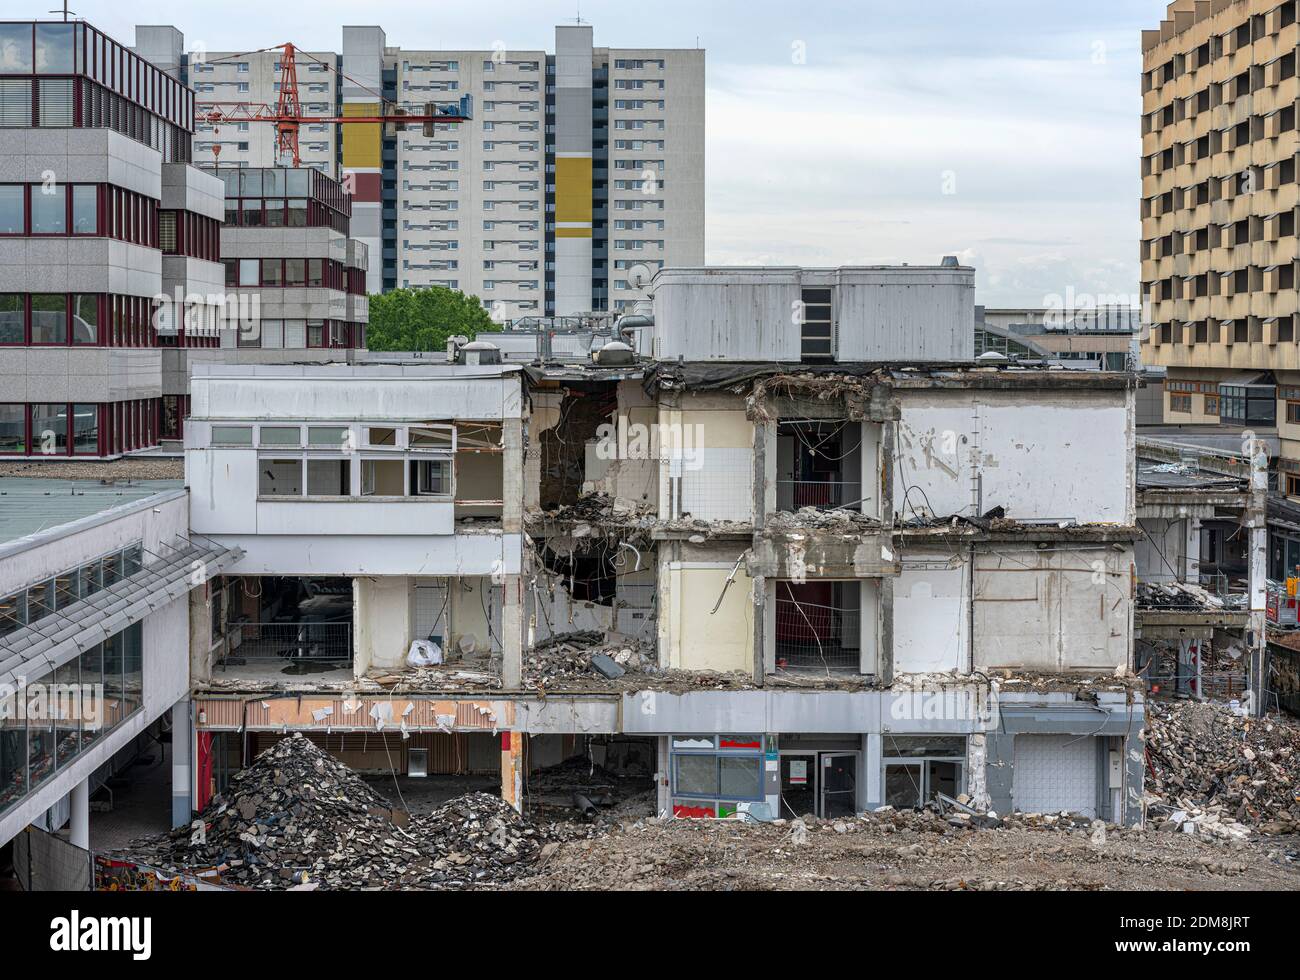 Demolition Of A Shopping Center In Berlin Reinickendorf, Maerkisches Viertel Stock Photo